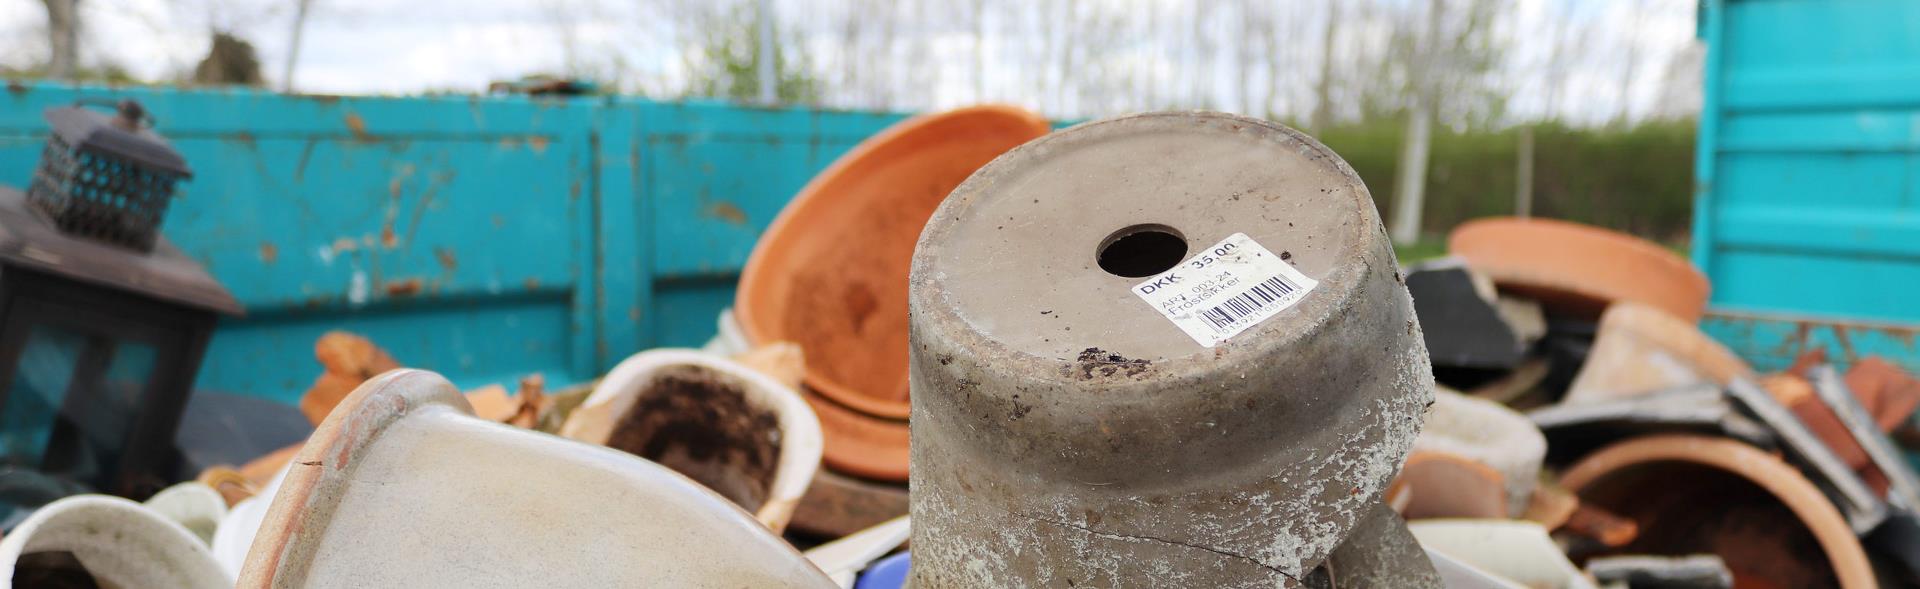 keramik i container på genbrugsplads